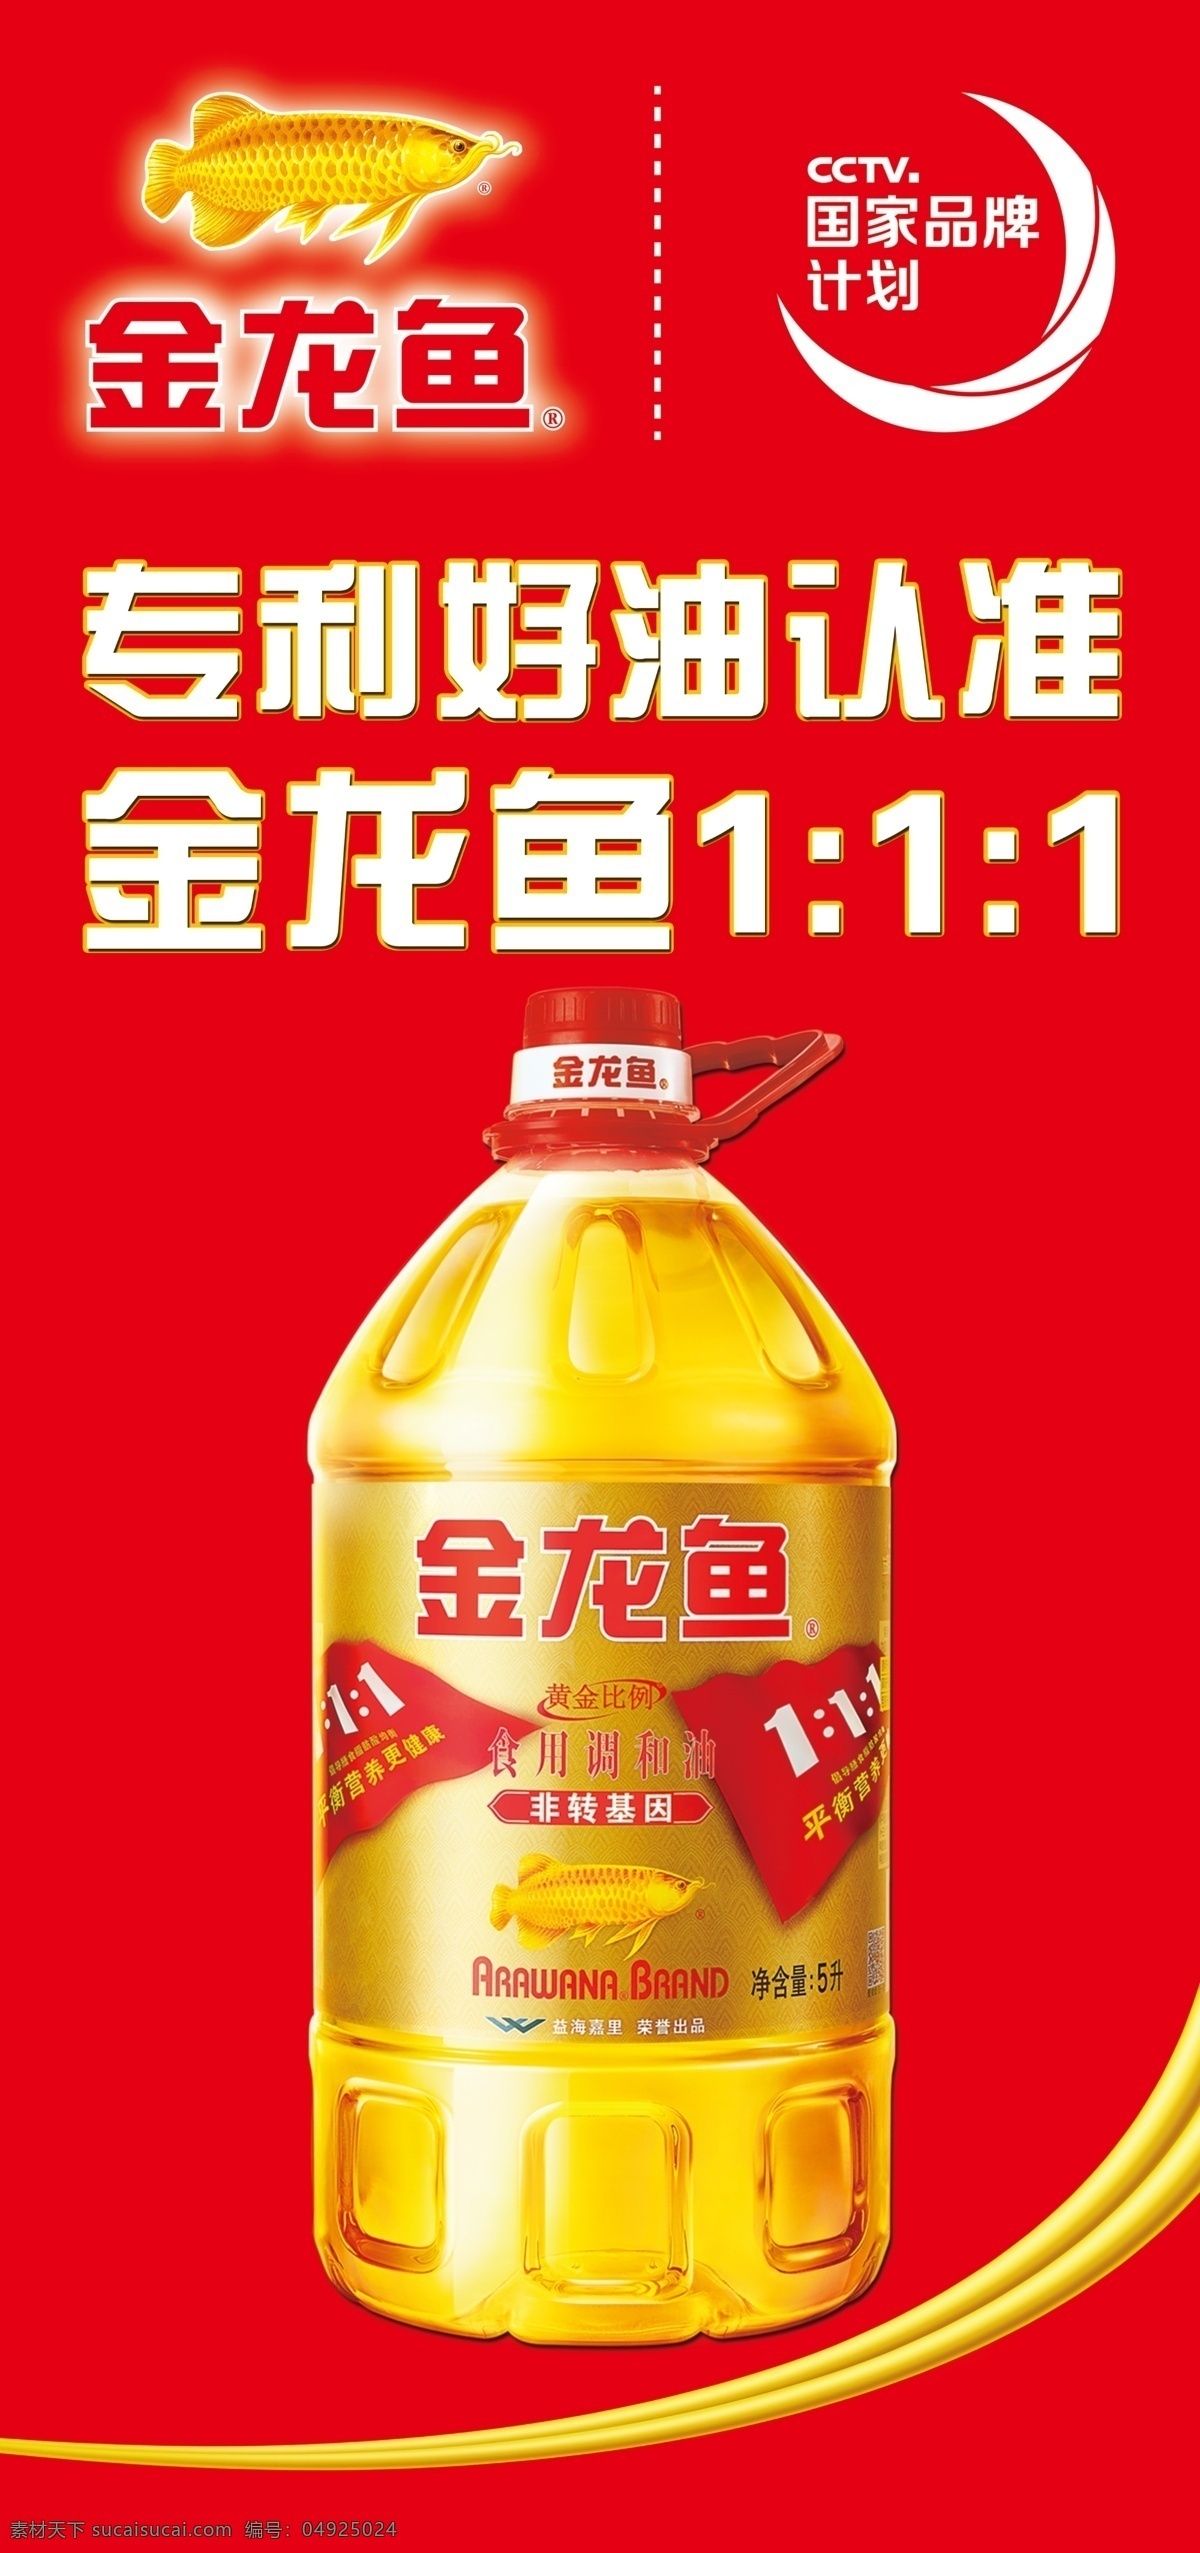 金龙鱼 色拉油 新版 品牌图标 logo cctv 国家品牌计划 专利好油认准 食用调和油